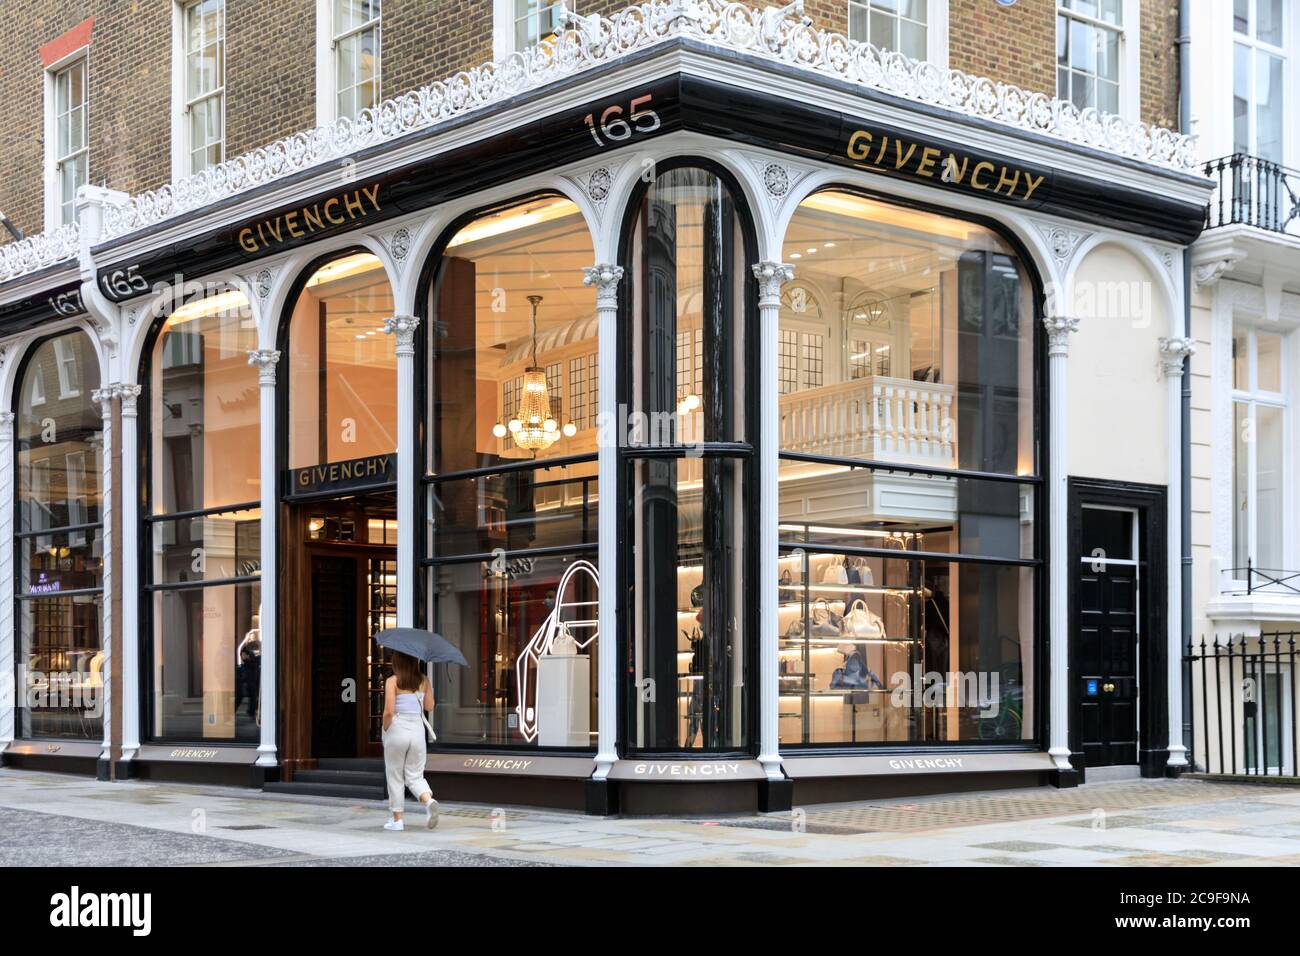 Givenchy Store Shop Couture Paris France fashion designer couturier Rue  Faubourg Saint Honoré Stock Photo - Alamy